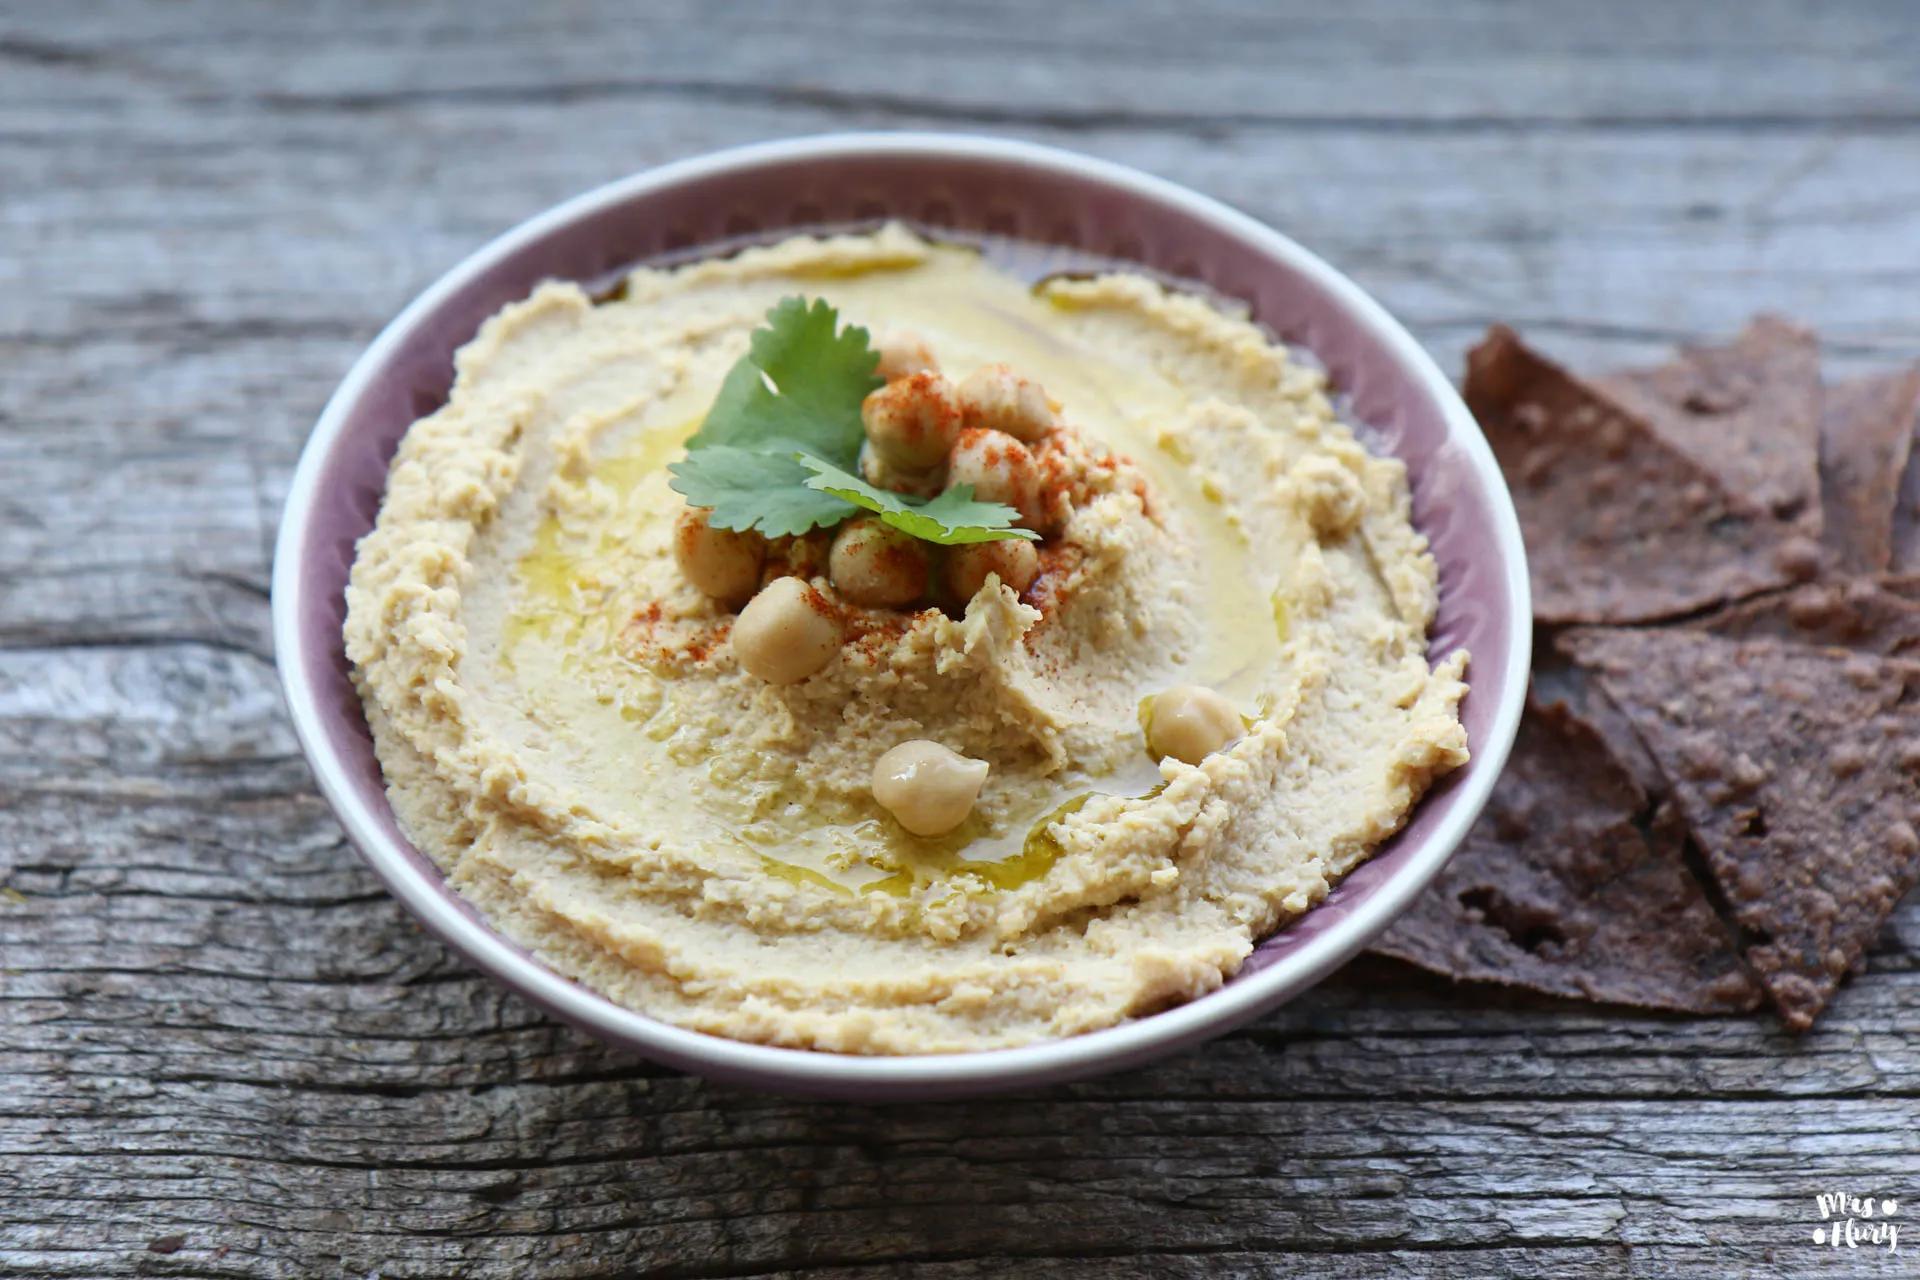 Bestes Hummus Rezept – Gesunder Brotaufstrich / Dip | Mrs Flury ...